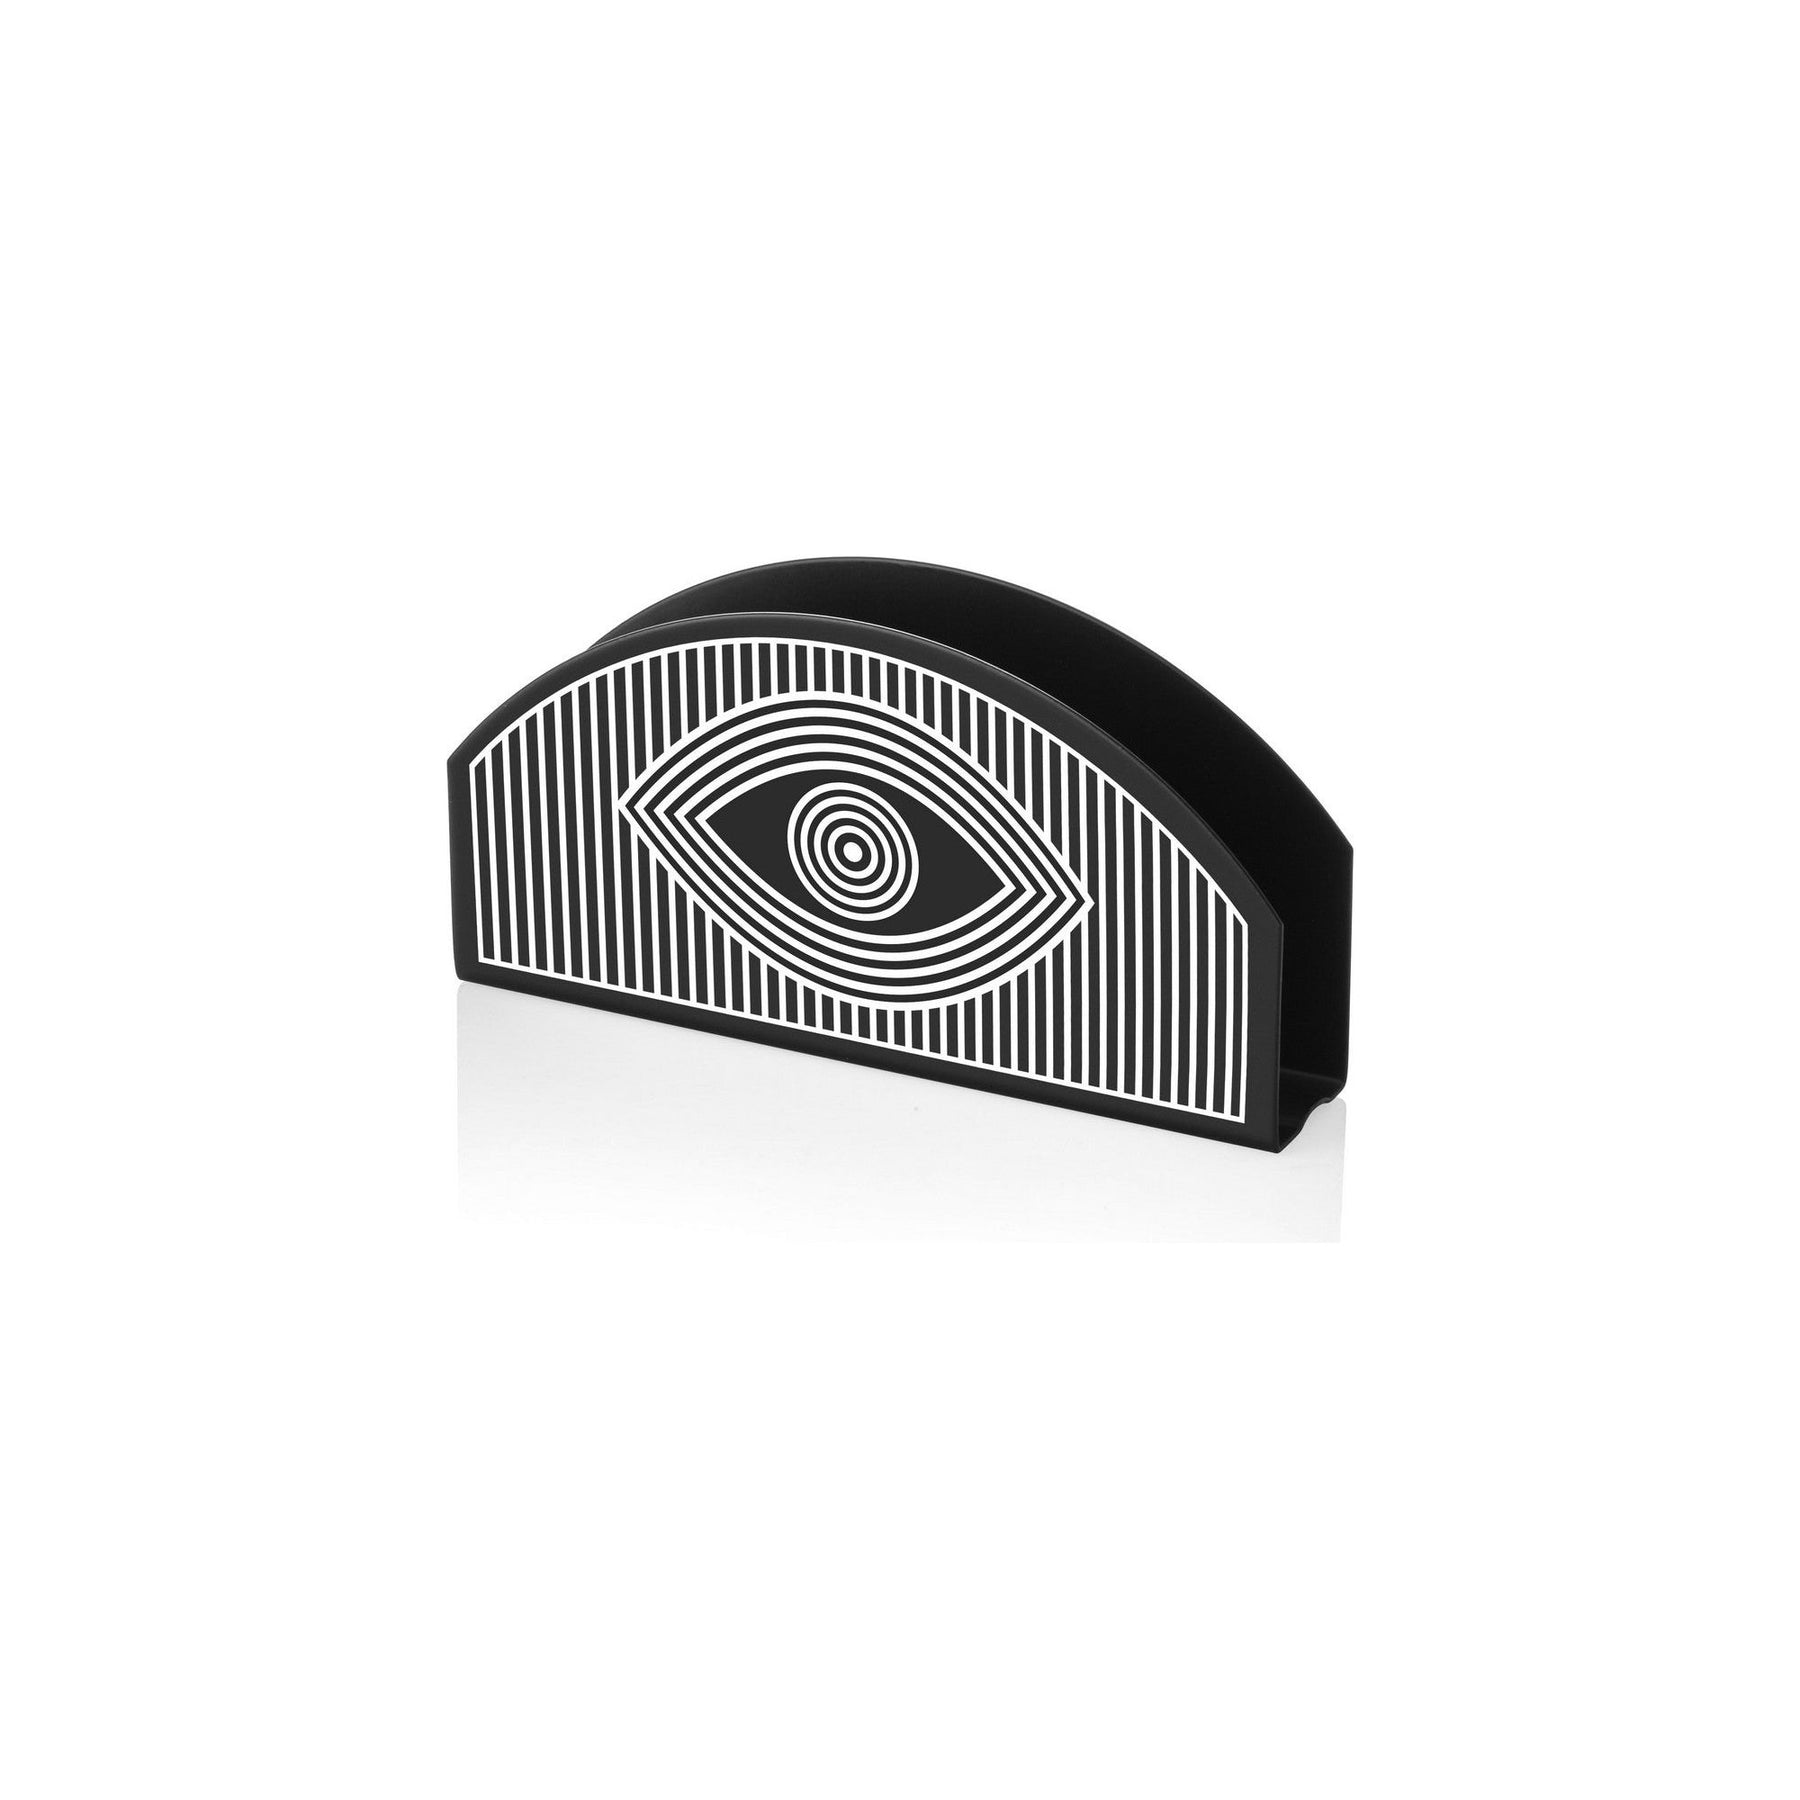 Suport de servetele PCT0011, negru cu imprimeu, metal 100%, 16x2x8 cm